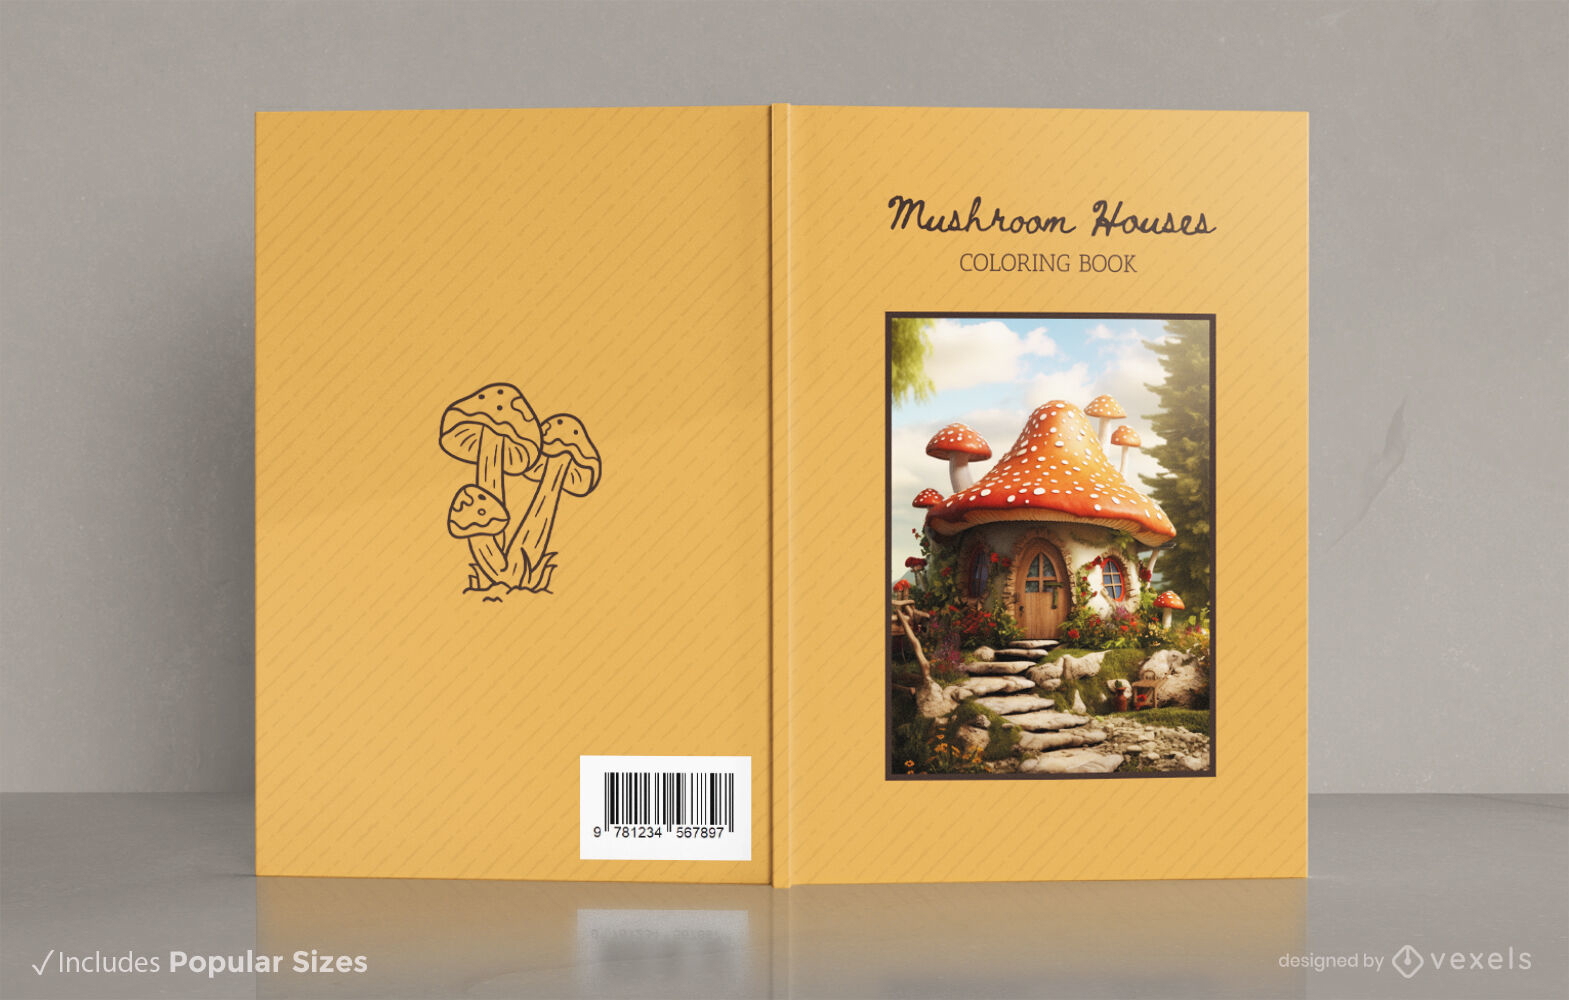 Mushroom house fantasy book cover design